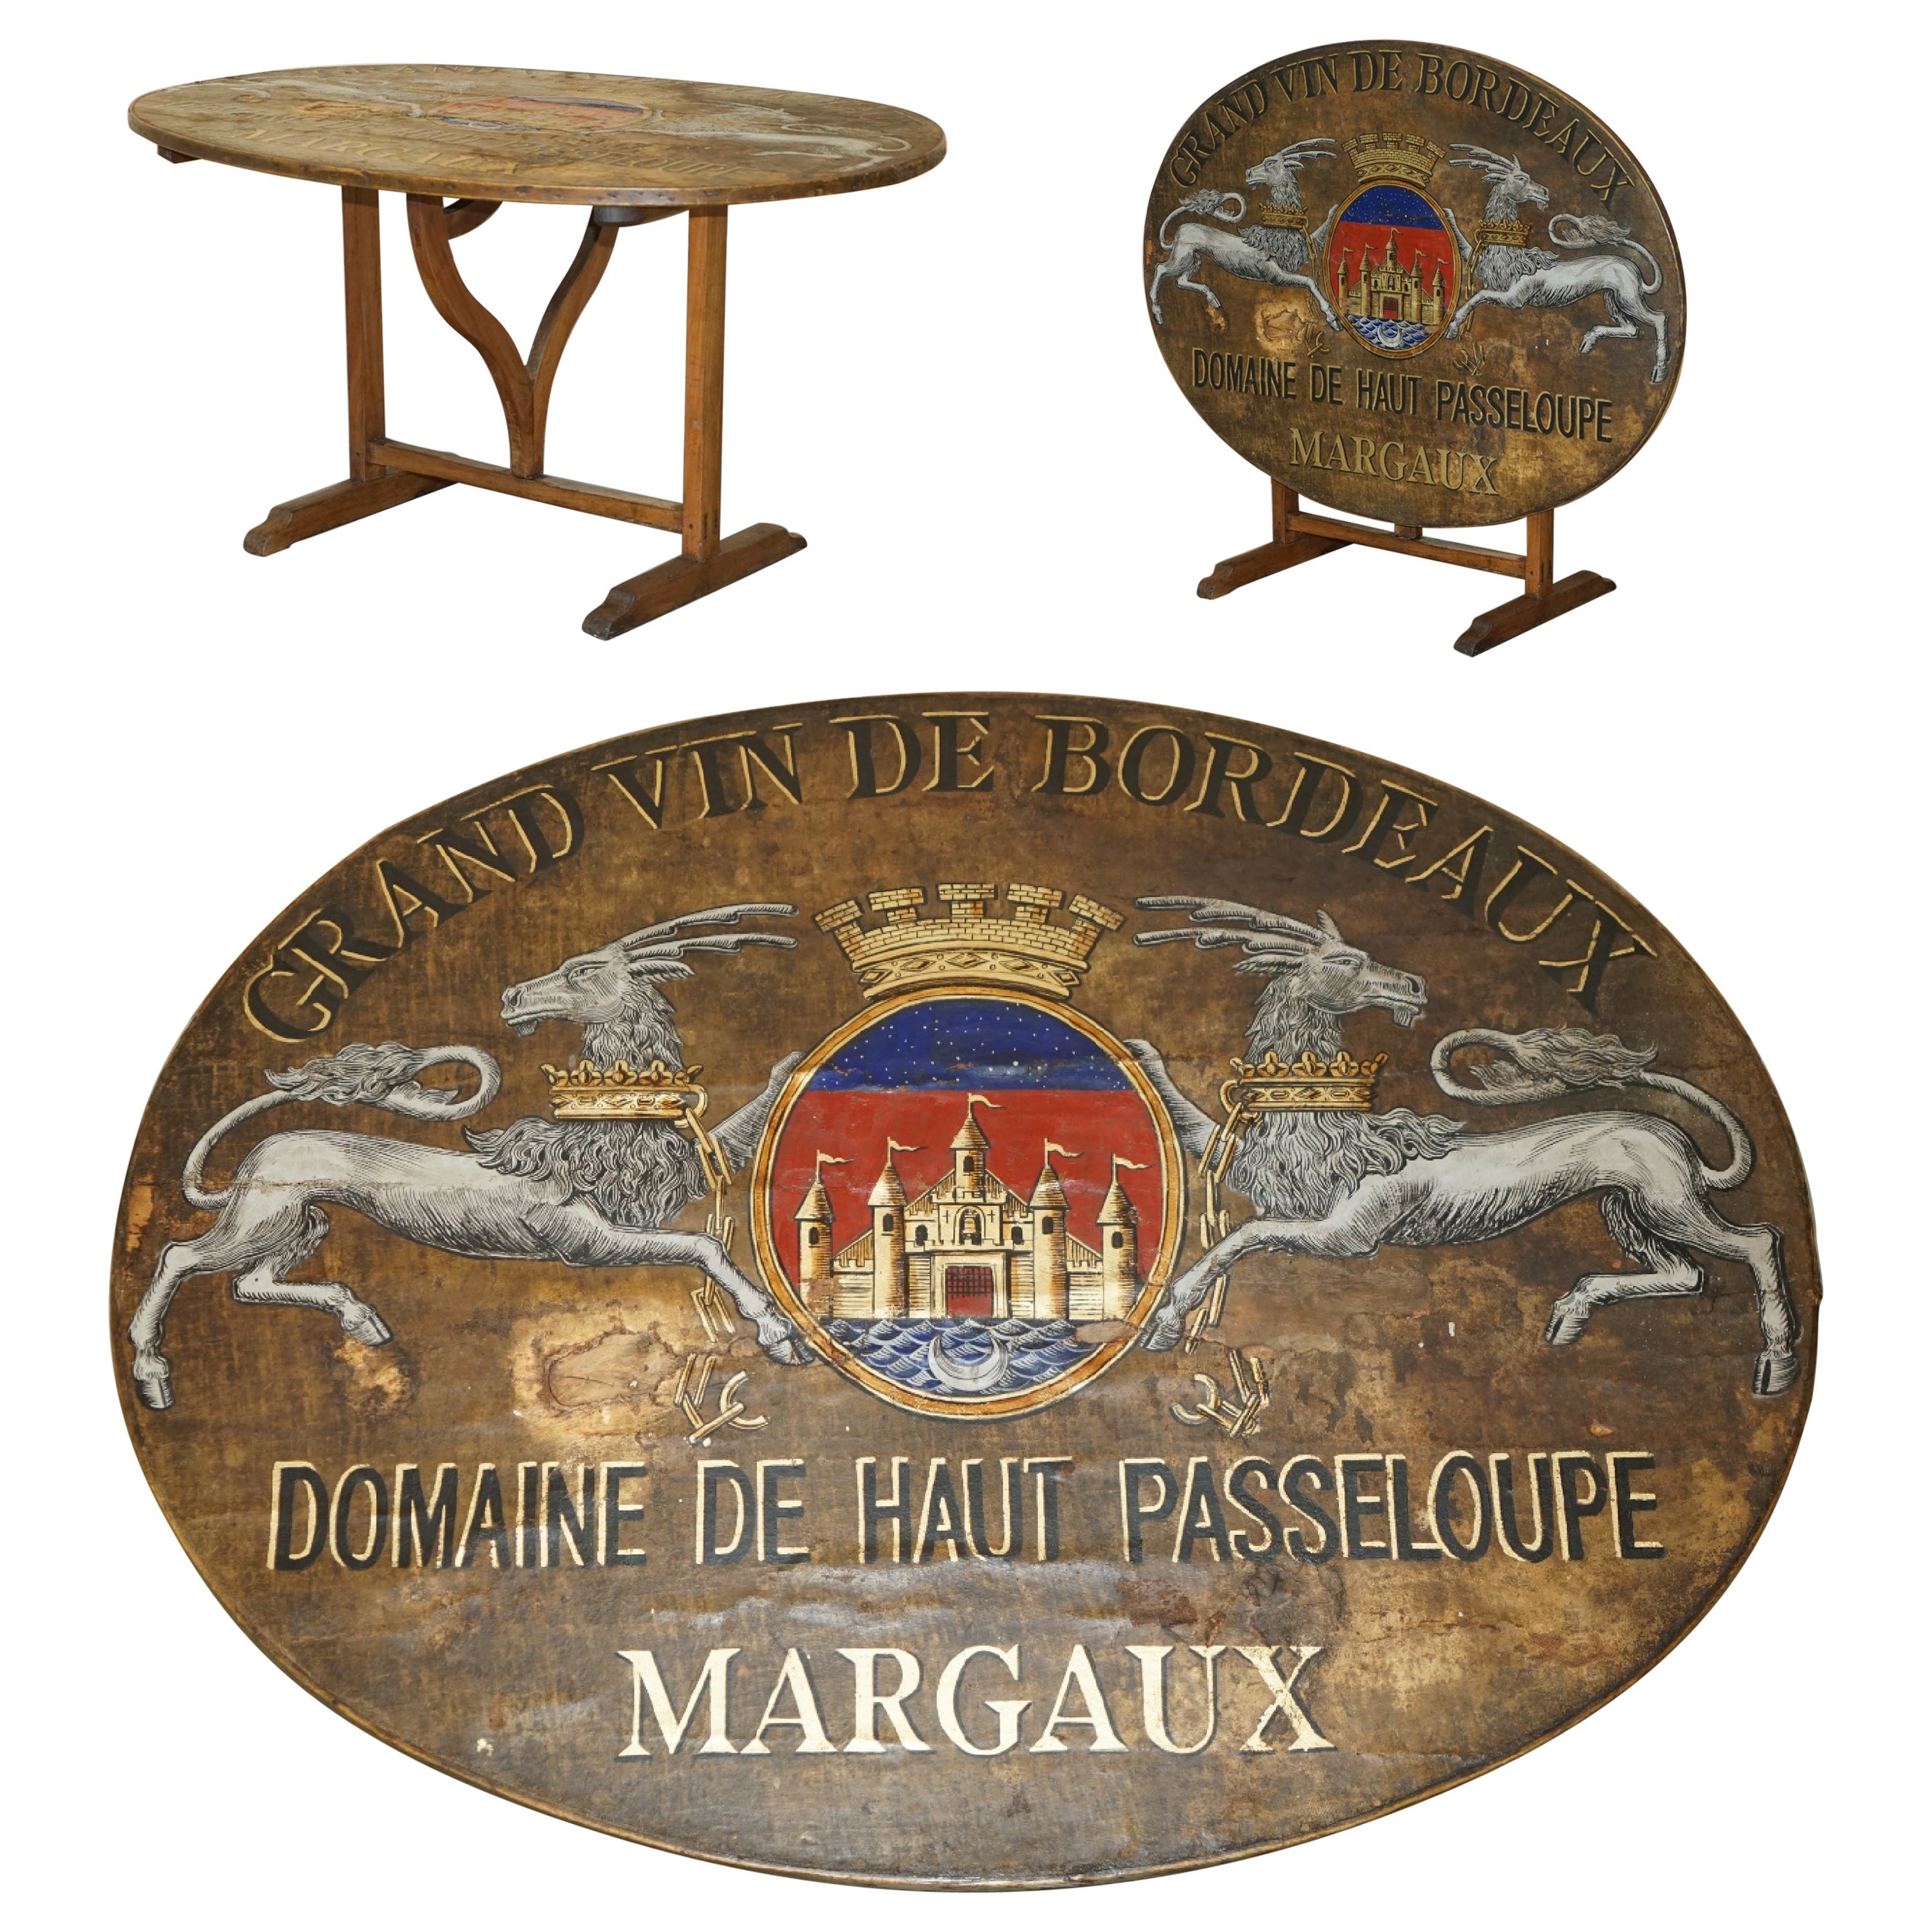 ANTIquité - 1860 - TABLE ARMOIRE FRANÇAISE VENDANGE - CHAMPAGNE -TASTING TABLE - ARMOIRE